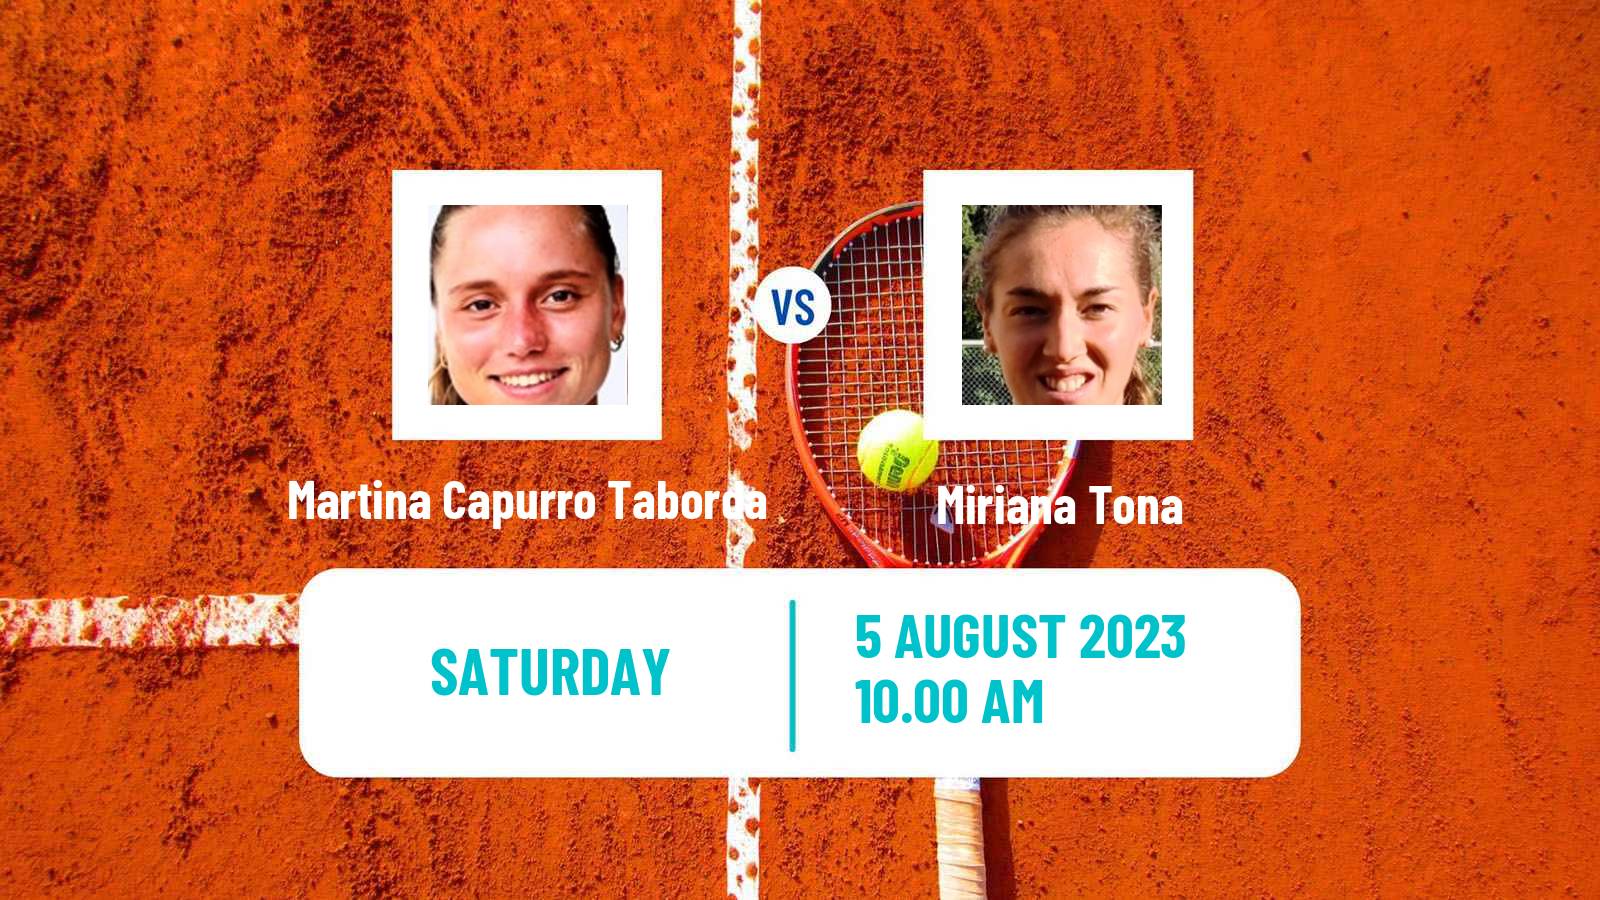 Tennis ITF W25 Junin Women Martina Capurro Taborda - Miriana Tona